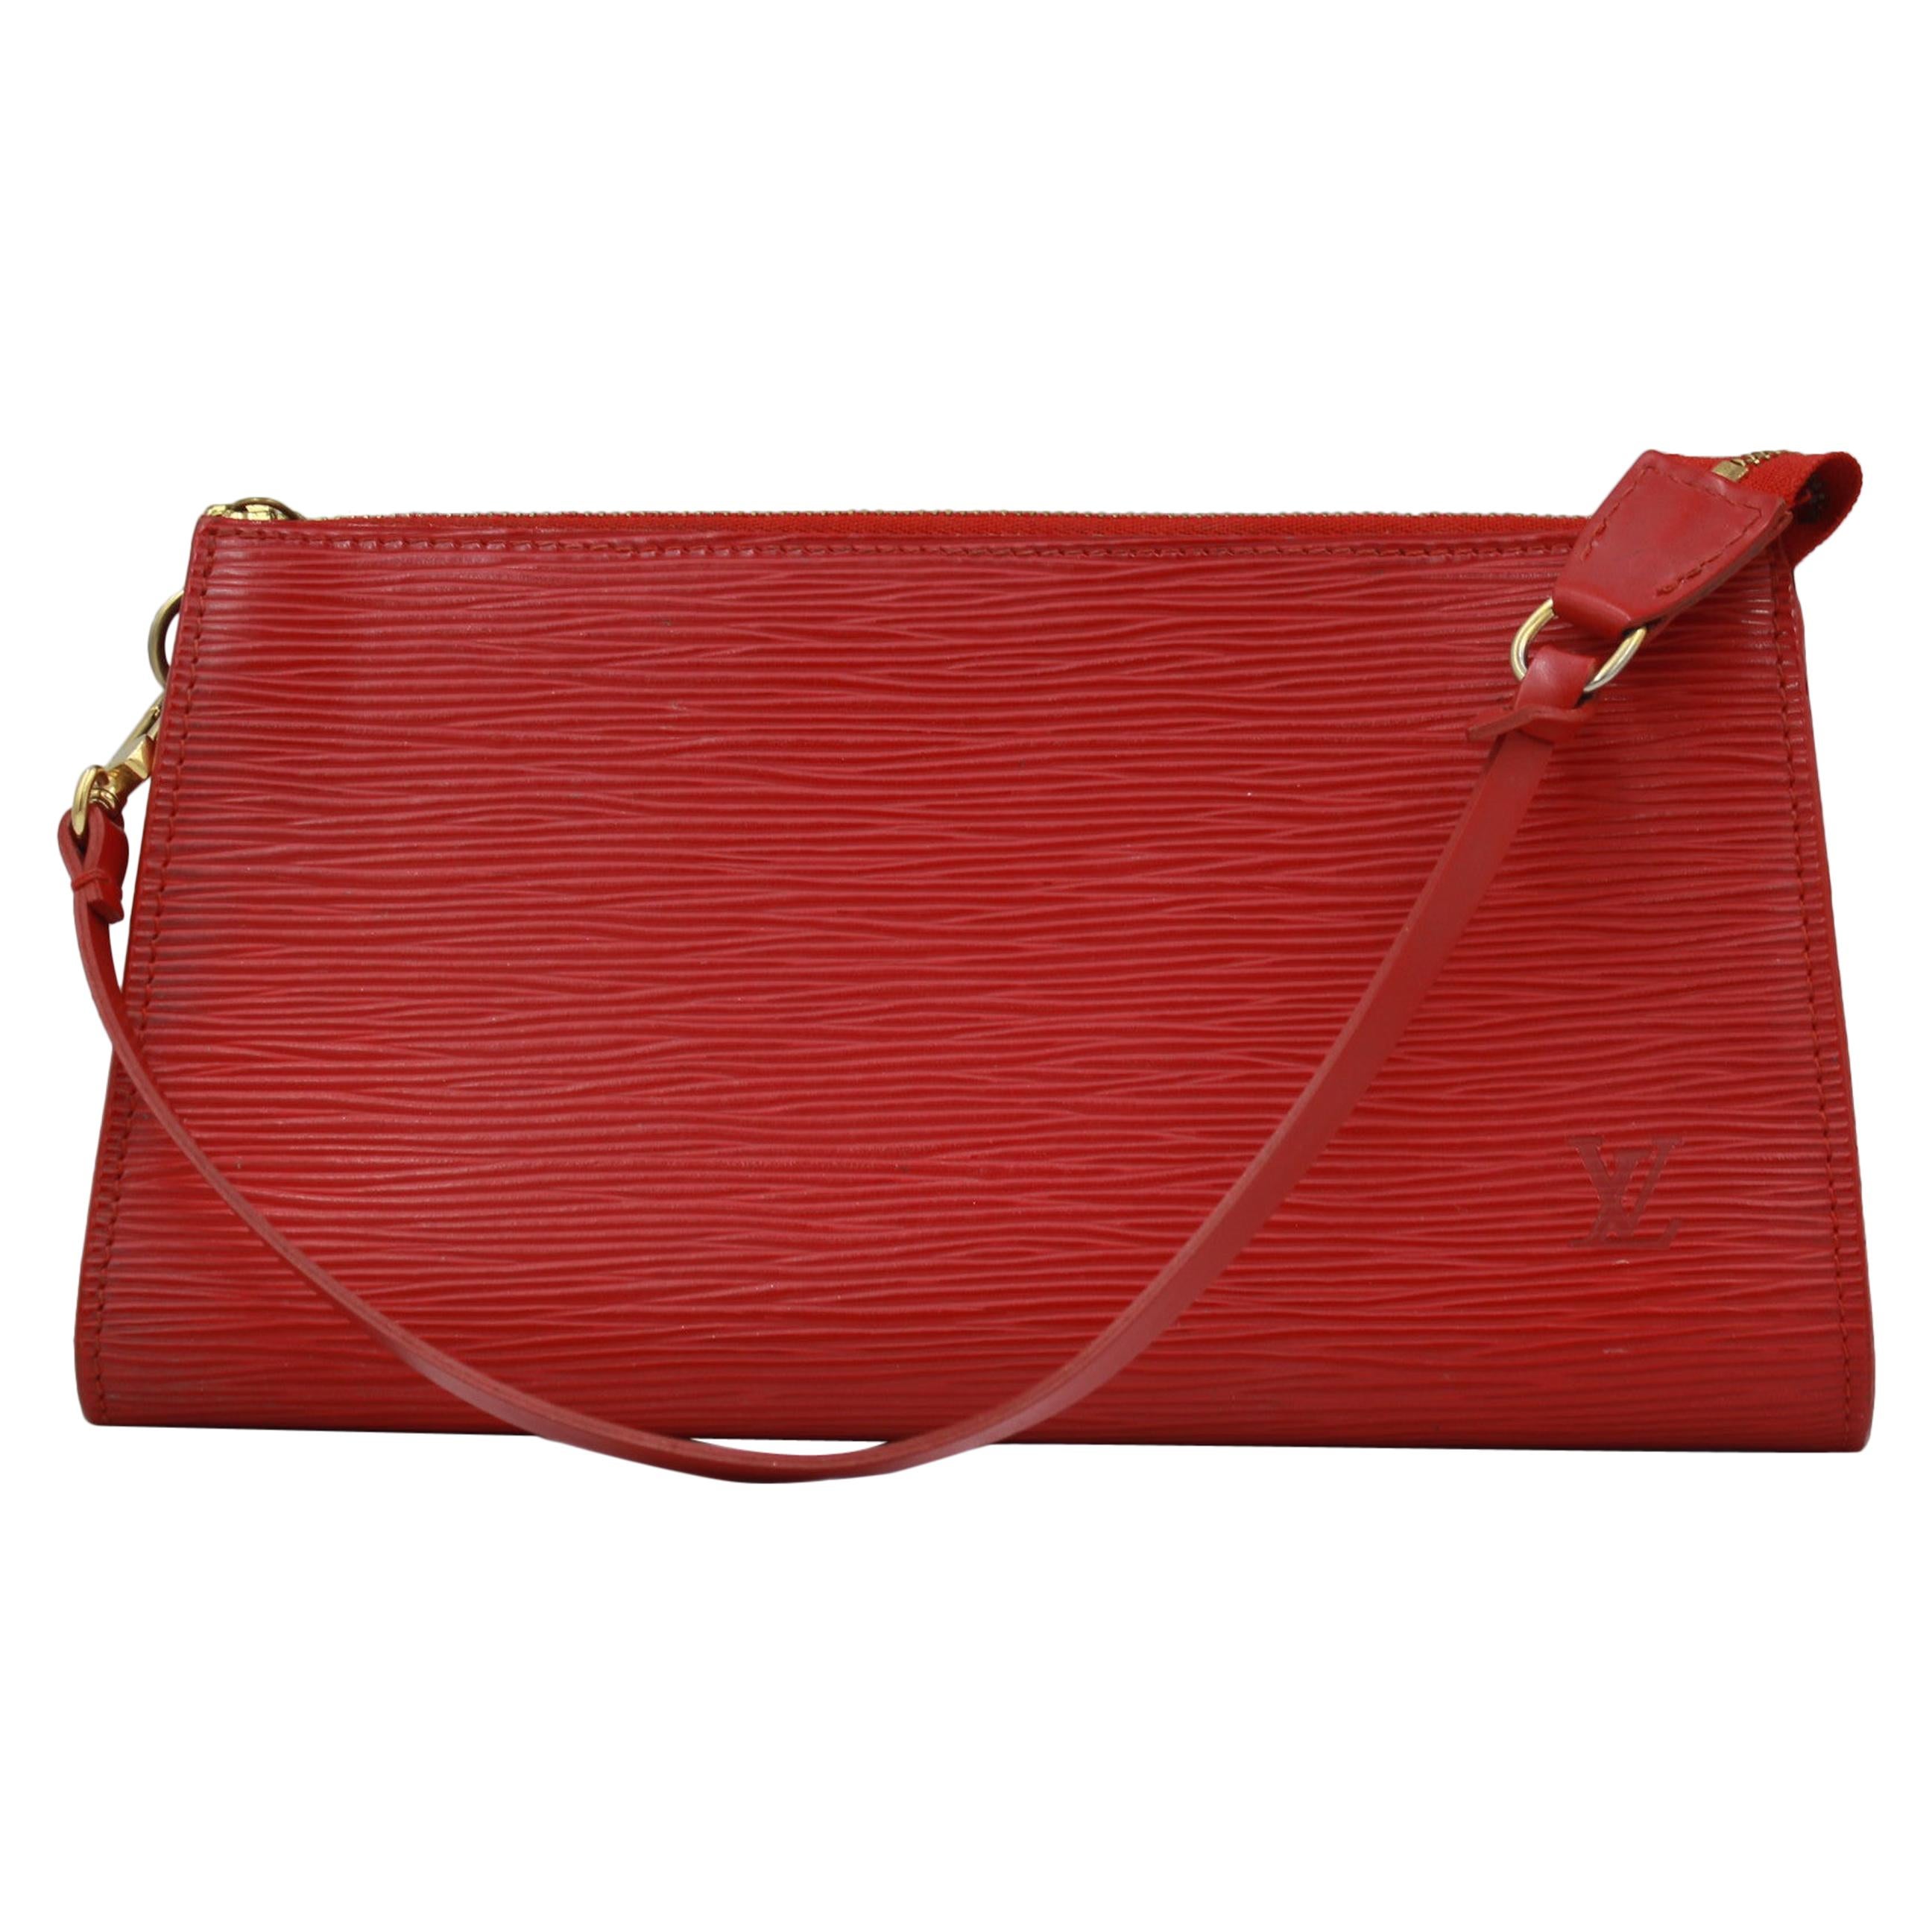 Louis Vuitton Accessoire Clutch in red épi leather